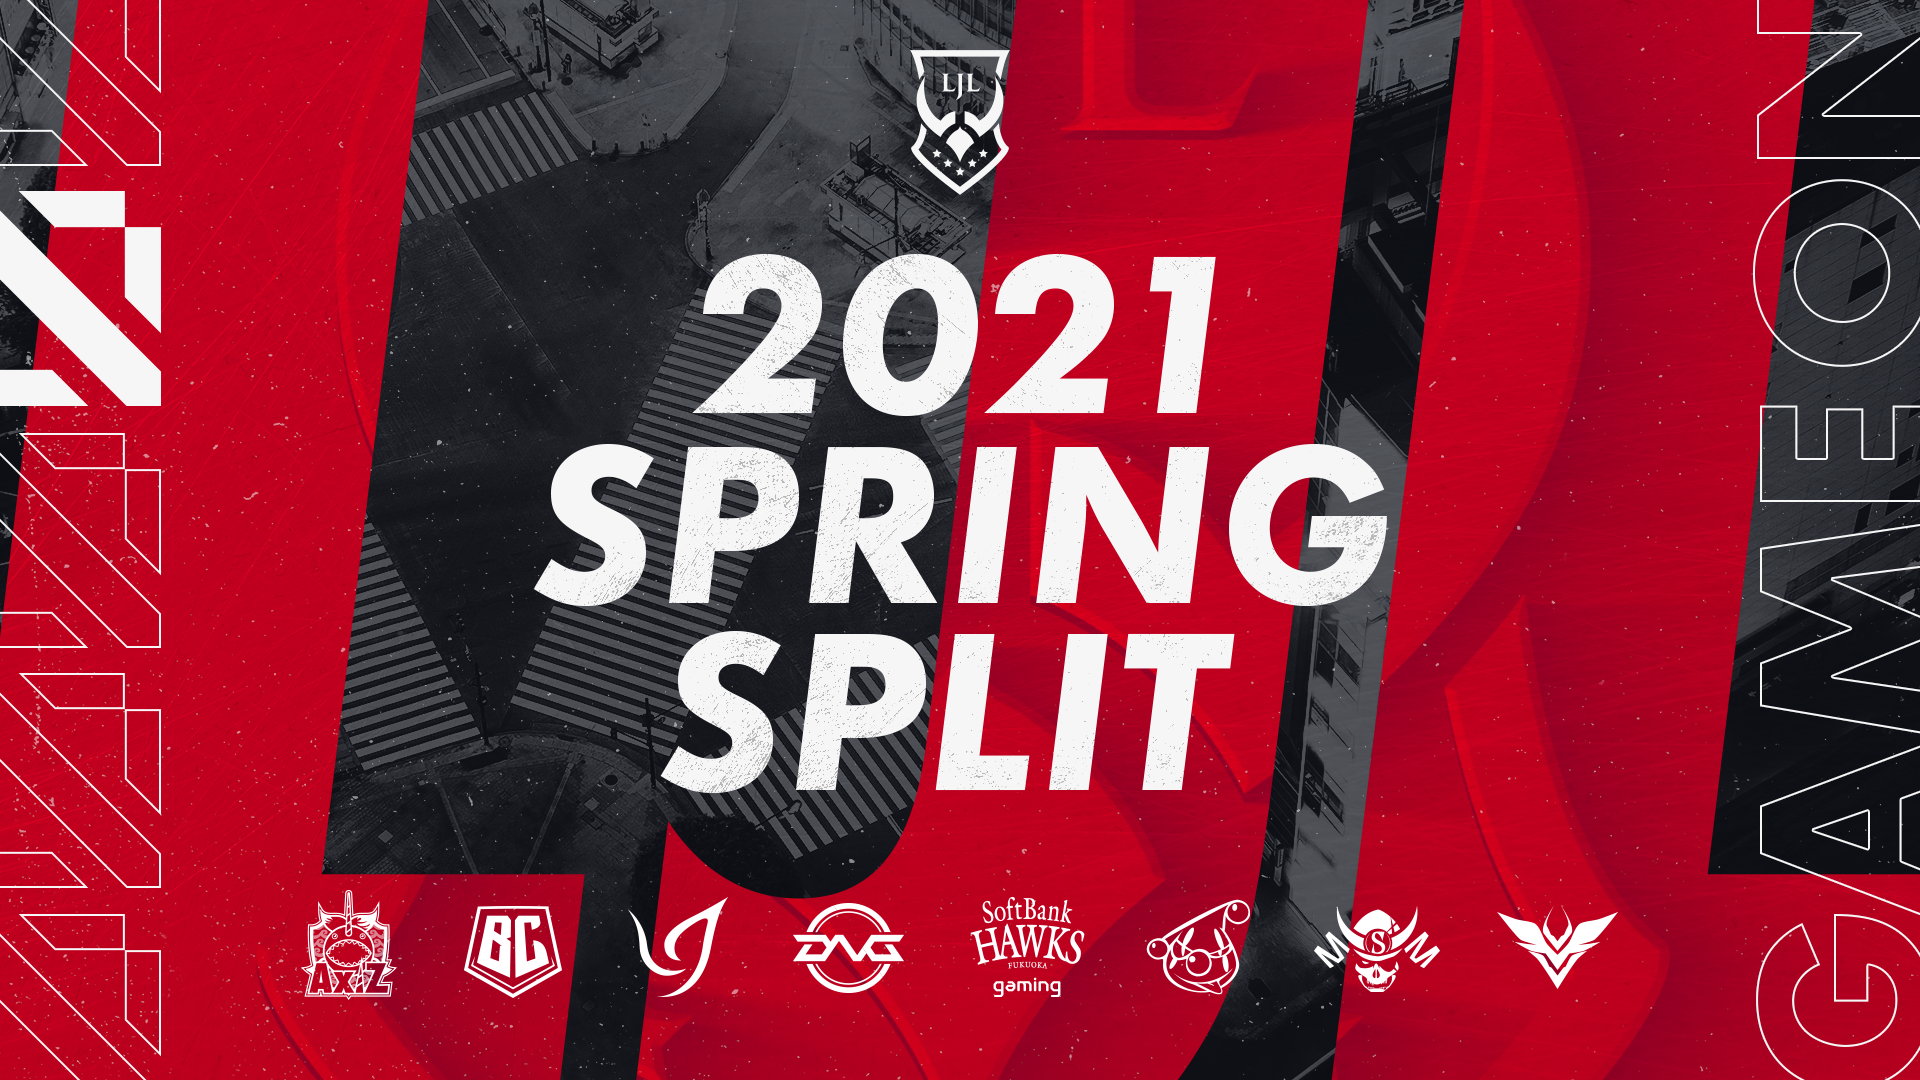 【新型コロナウイルス感染症対策】2021年春季リーグ「LJL 2021 Spring Split」開催概要を発表